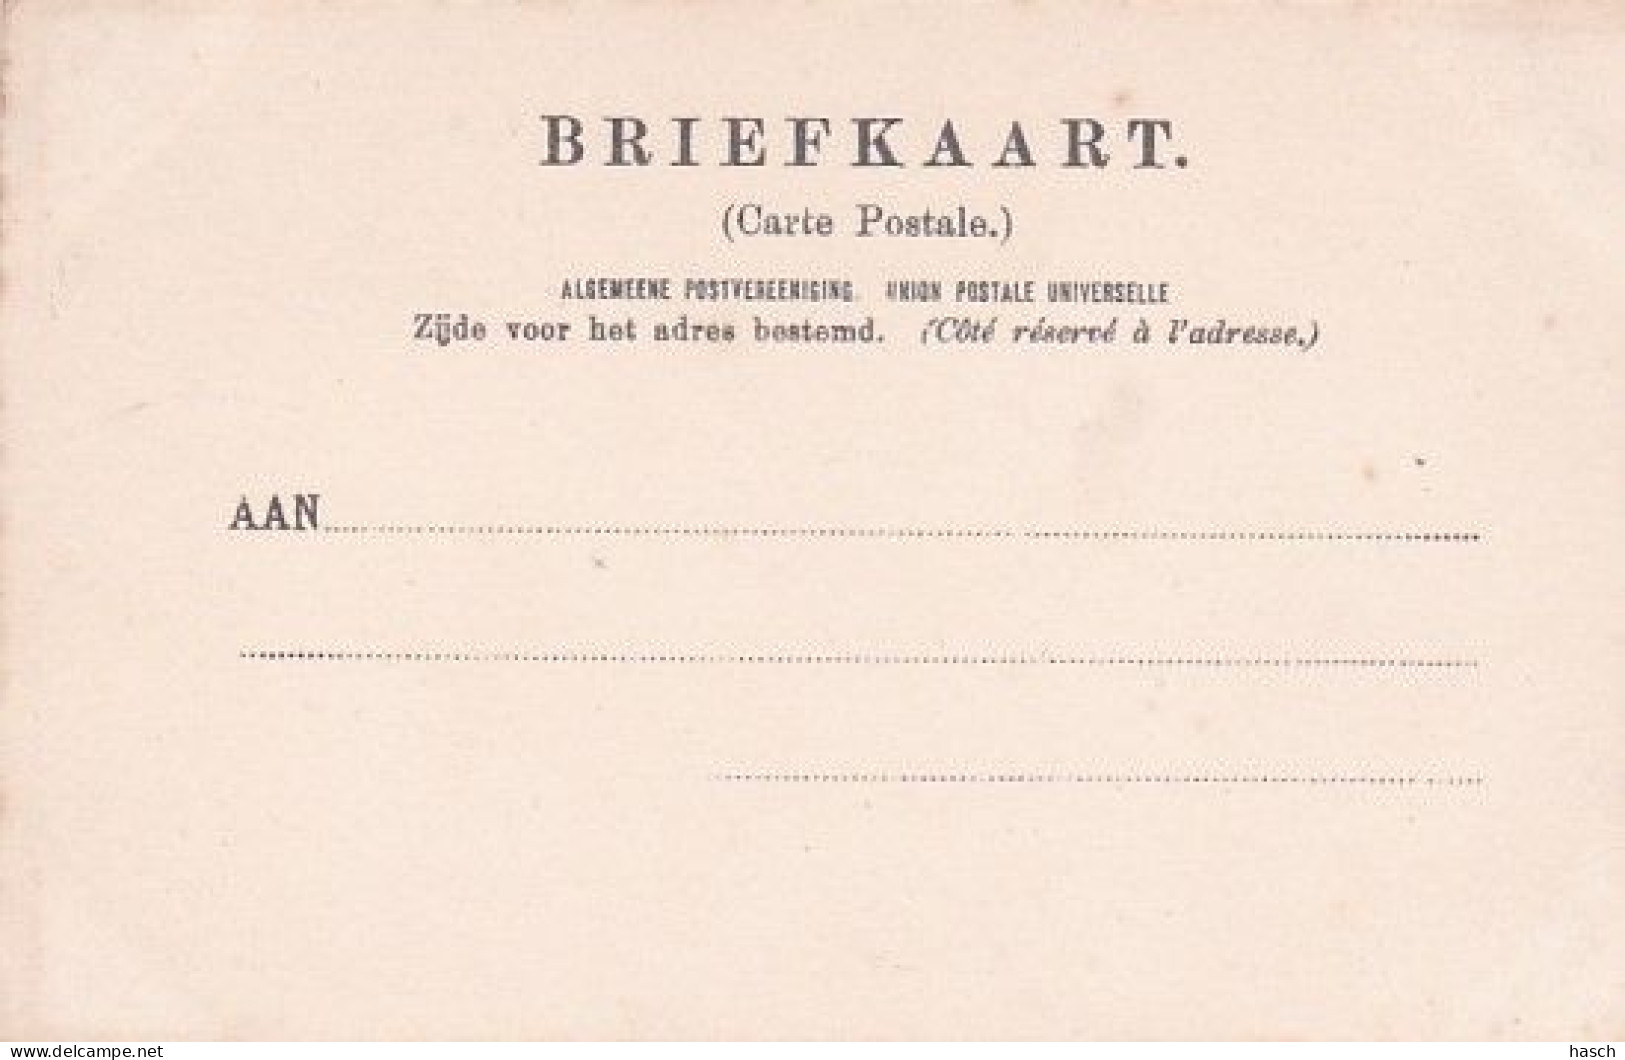 1889	113	Haarlem, ’t Informatiebureau Voor VREEMDELINGEN VERKEER, Gevestigd Kiosk Stationsplein, (zie Tekst)  - Haarlem